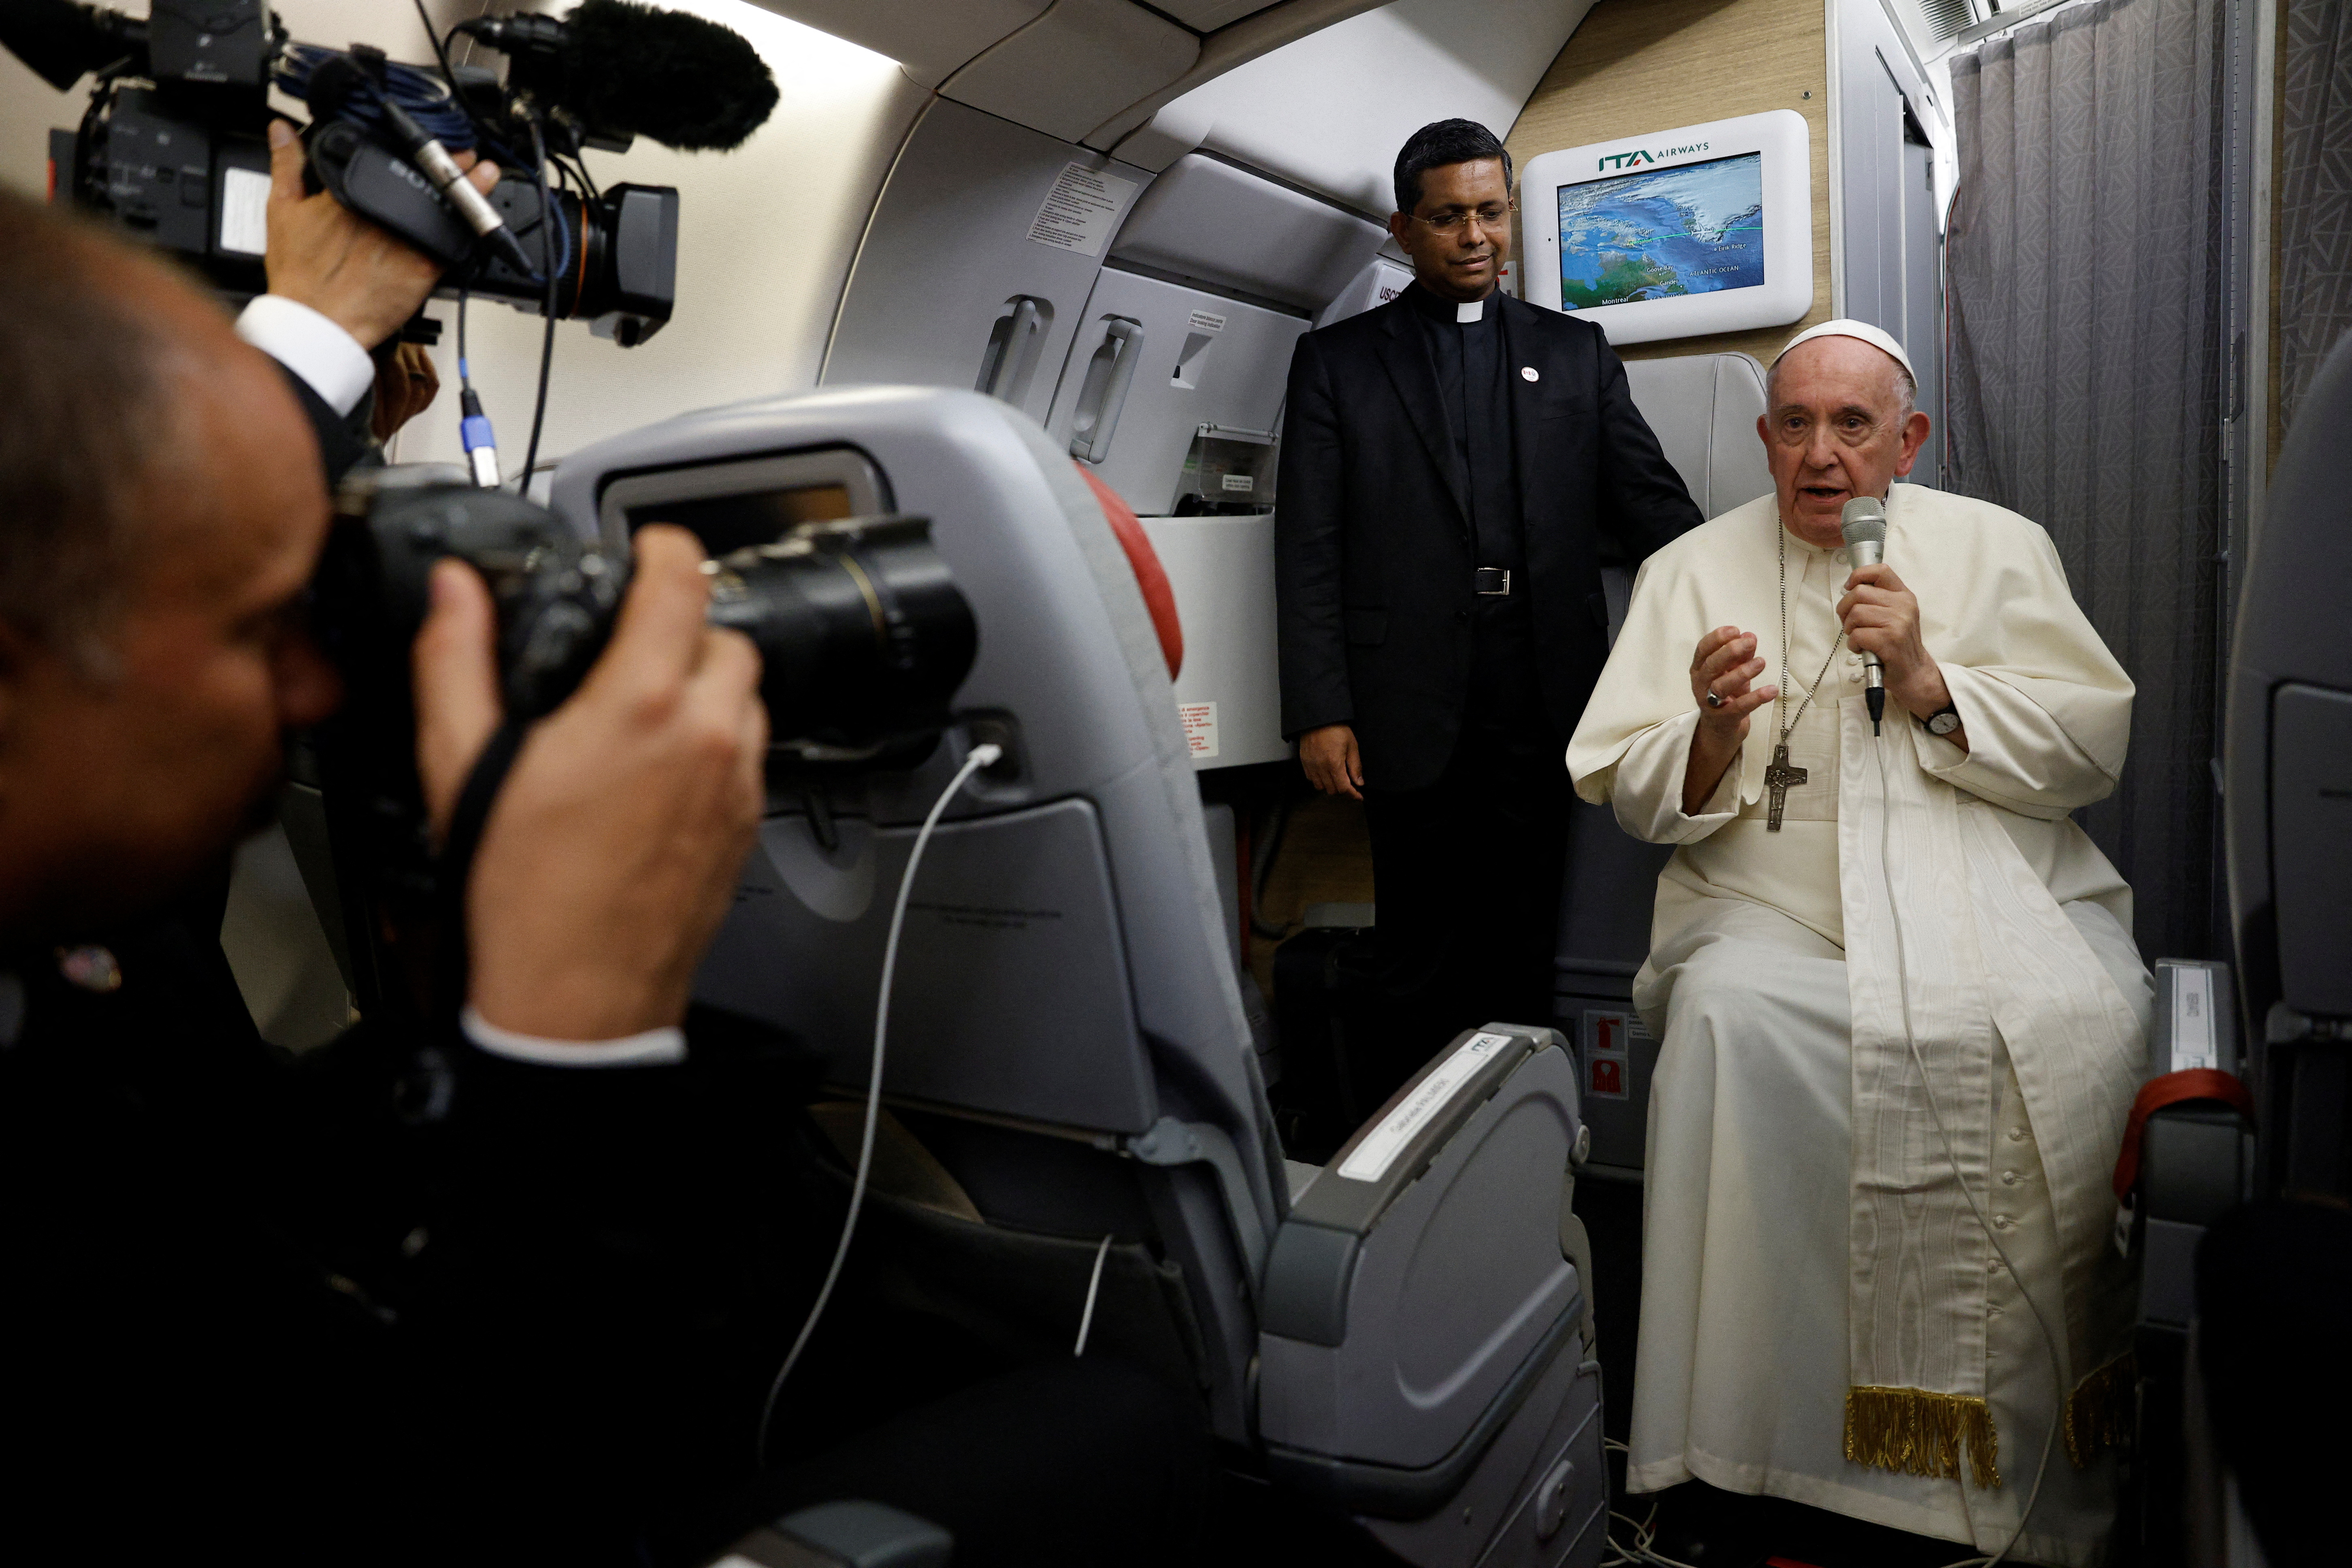 Durante una conferencia de prensa en el avión papal tras visitar Canadá, Francisco no descarto renunciar (REUTERS/Guglielmo Mangiapane/Pool)